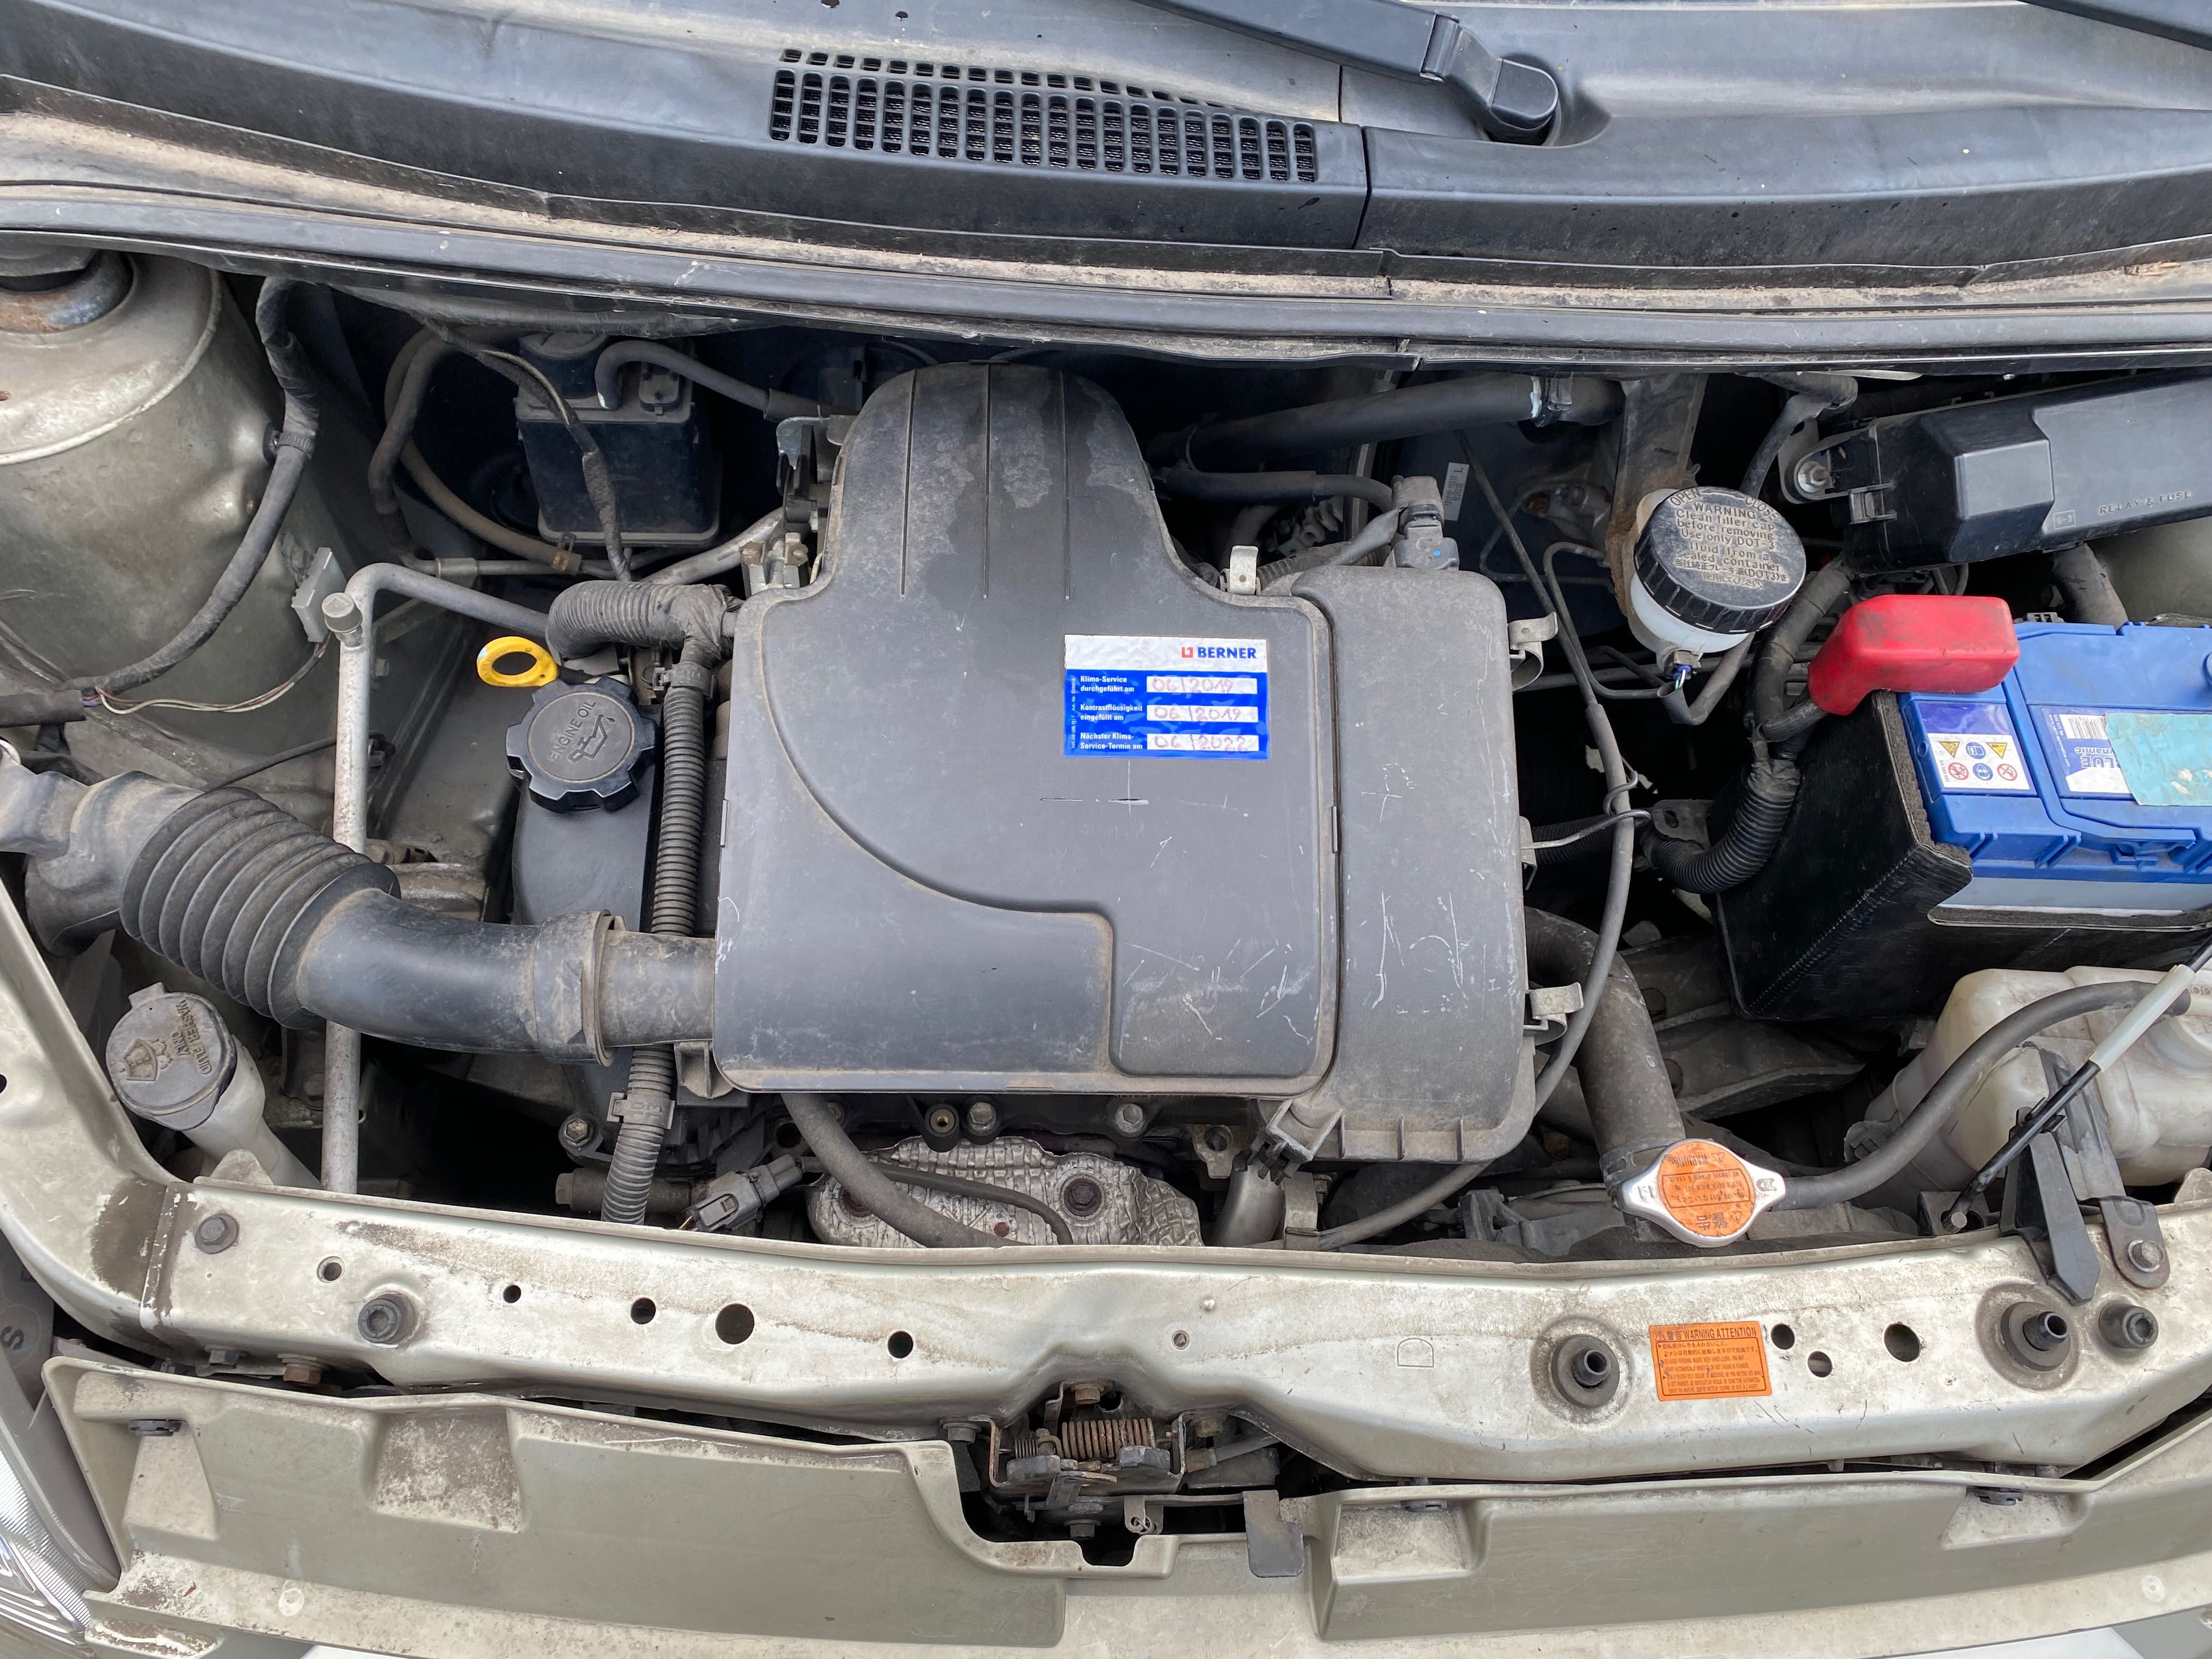 Daihatsu Sirion II 1,0 benzyna 70 KM klima I właściciel 2009 89 tys km